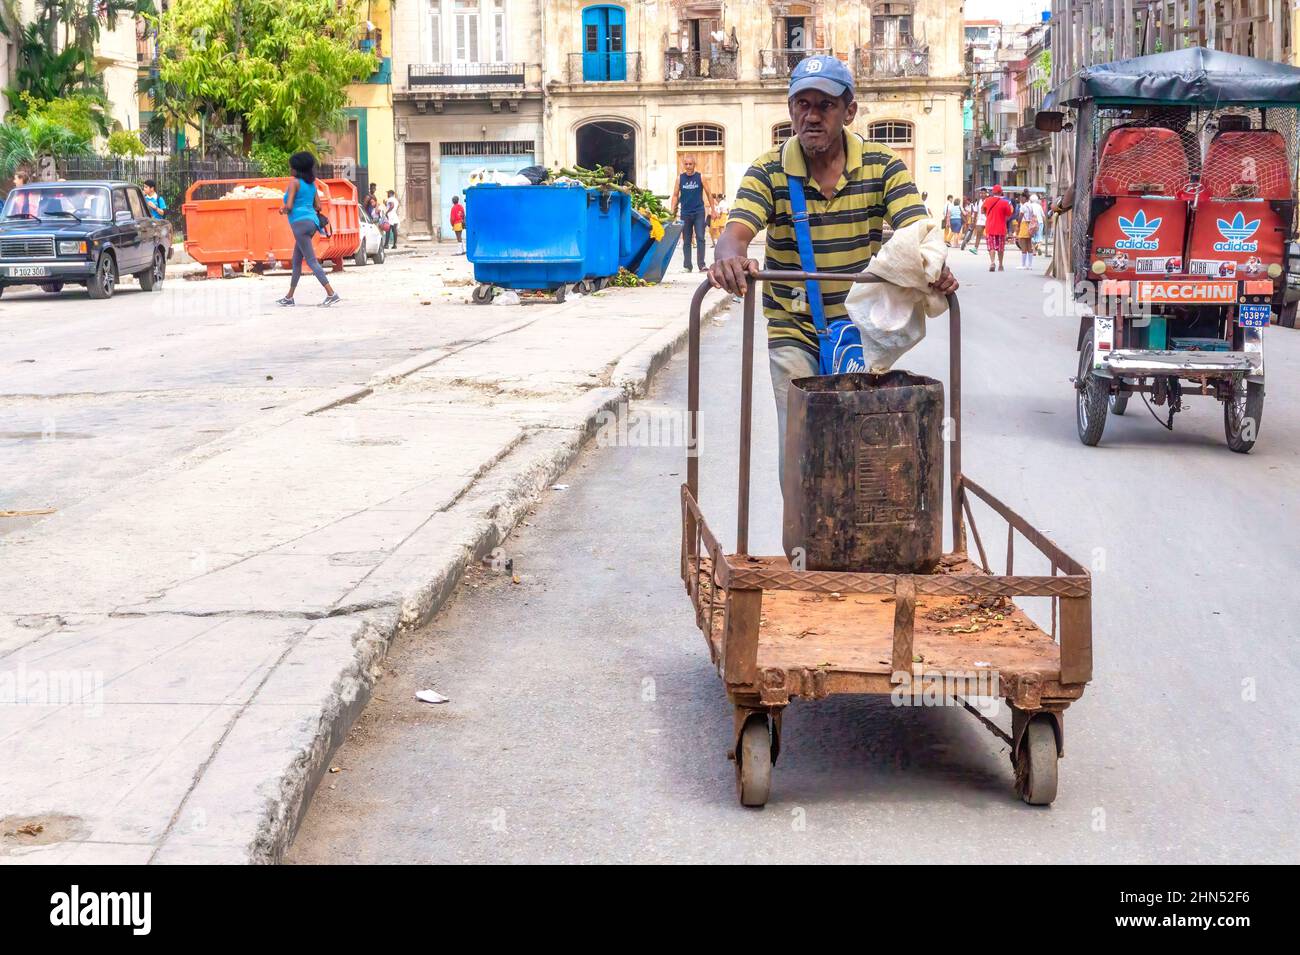 Un homme afro-caribéen pousse un chariot dans une rue de ville. Un bicitaxi et une poubelle sont vus en arrière-plan. Banque D'Images